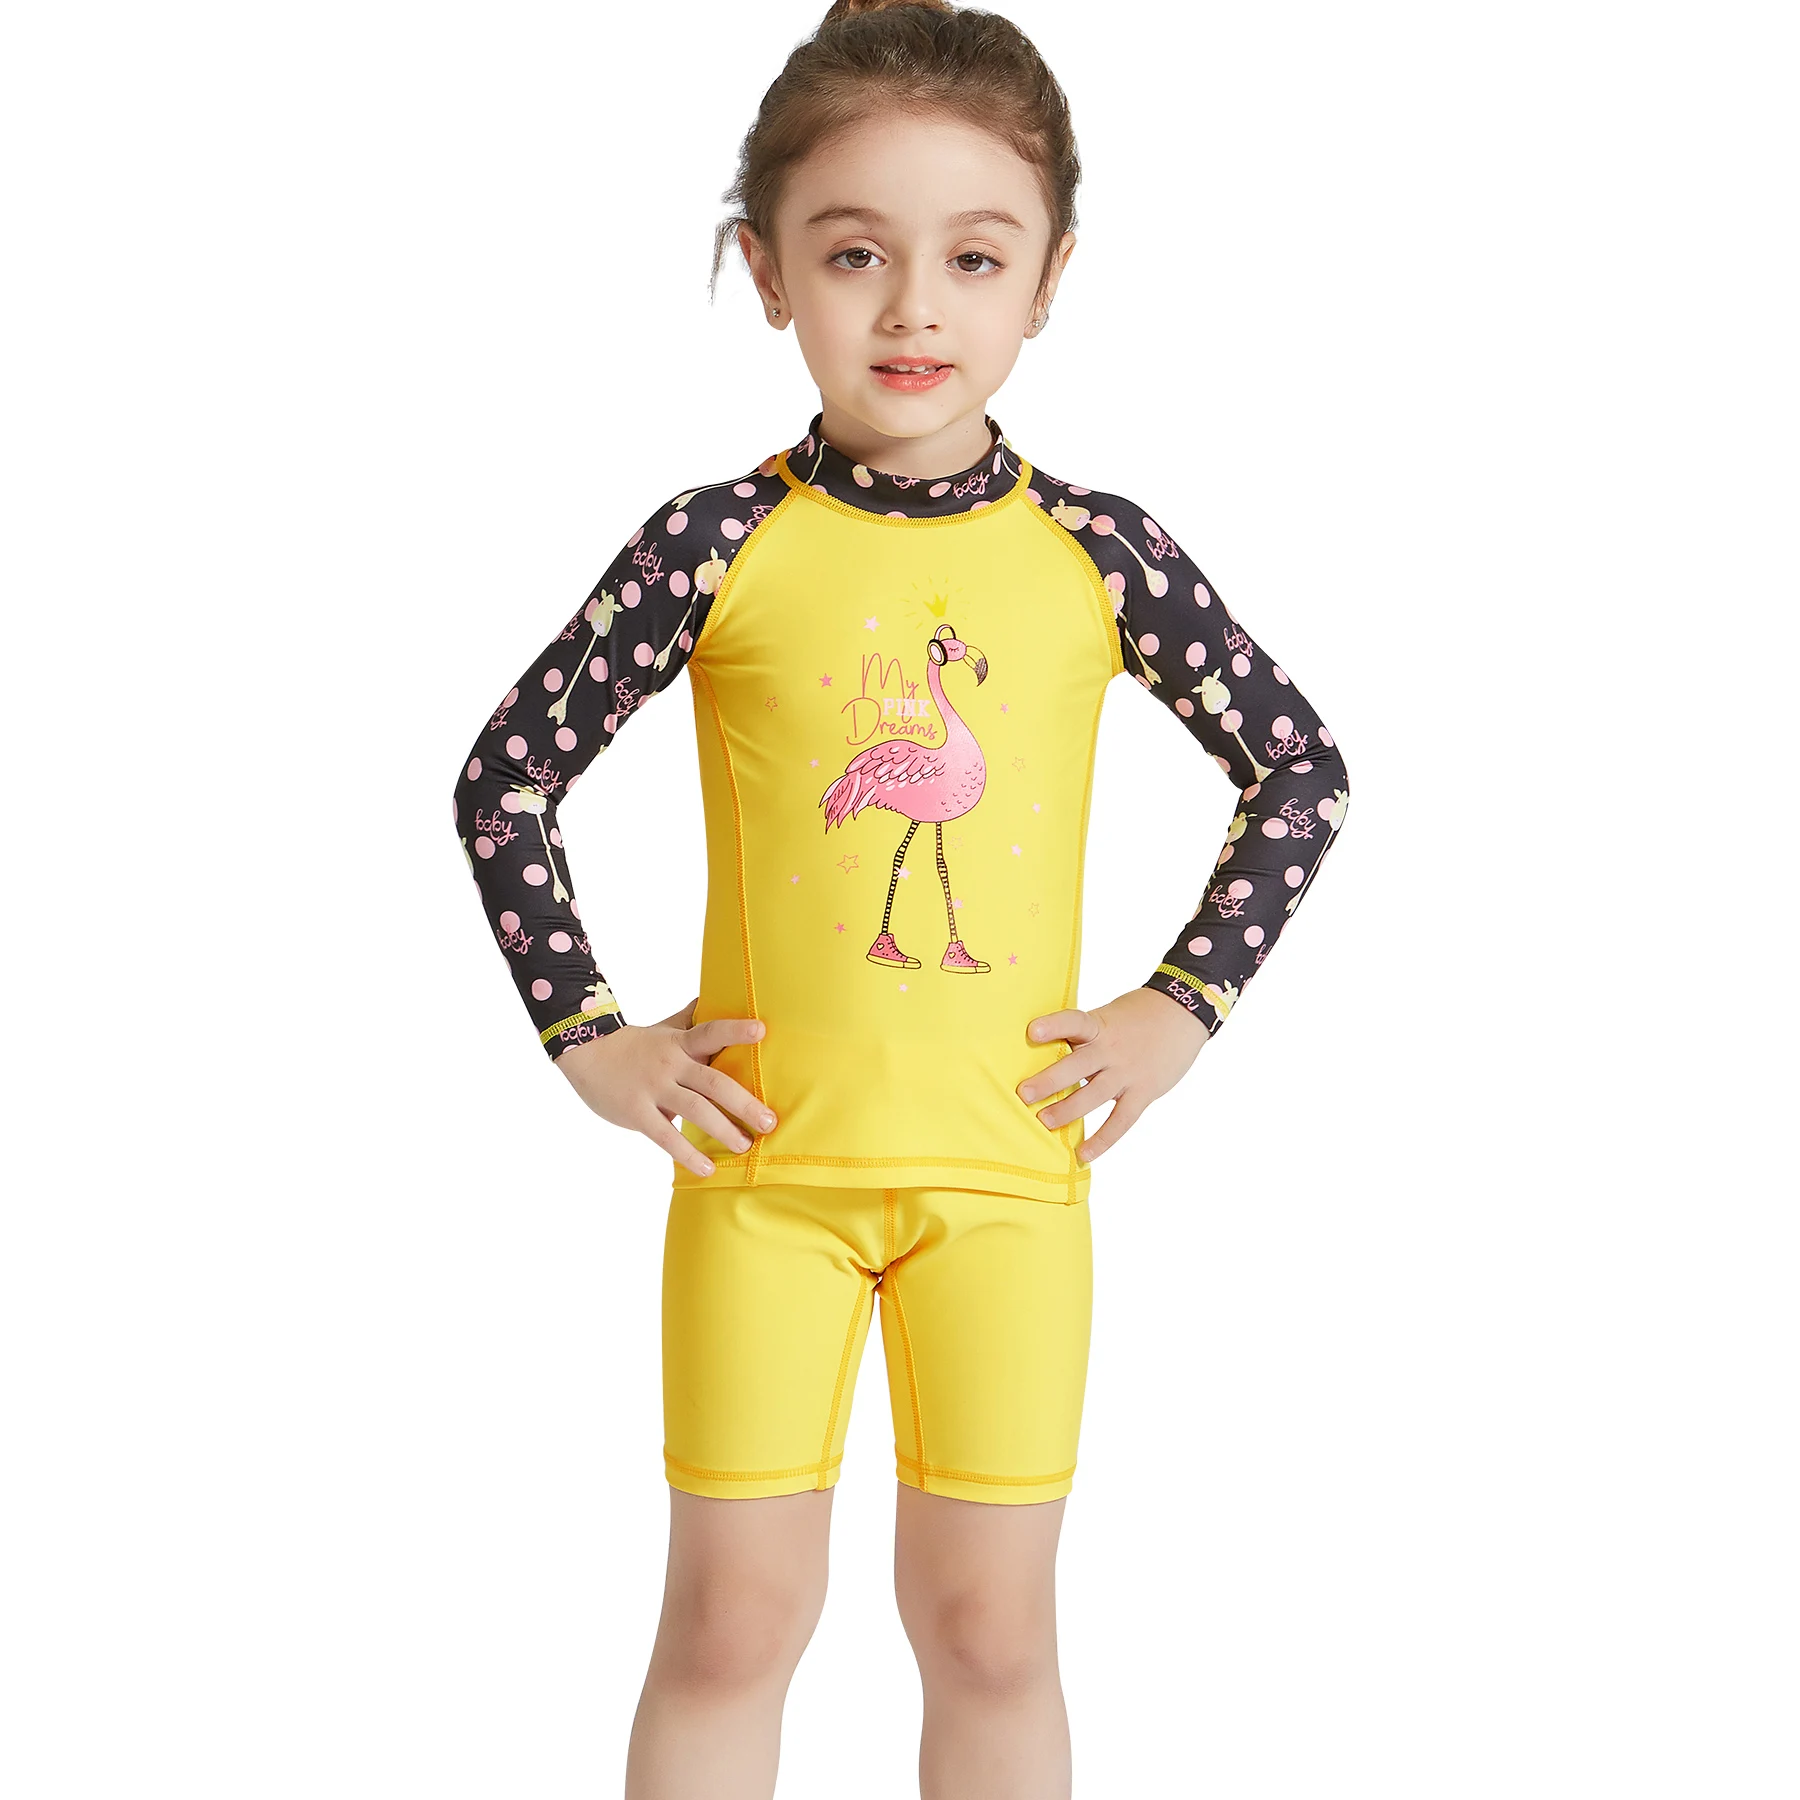 WildSurfer два-кусок костюмы От 2 до 12 лет дети купальники для мальчиков и девочек Разделение Дайвинг банный костюм быстросохнущая купальник с защитой от солнца W122